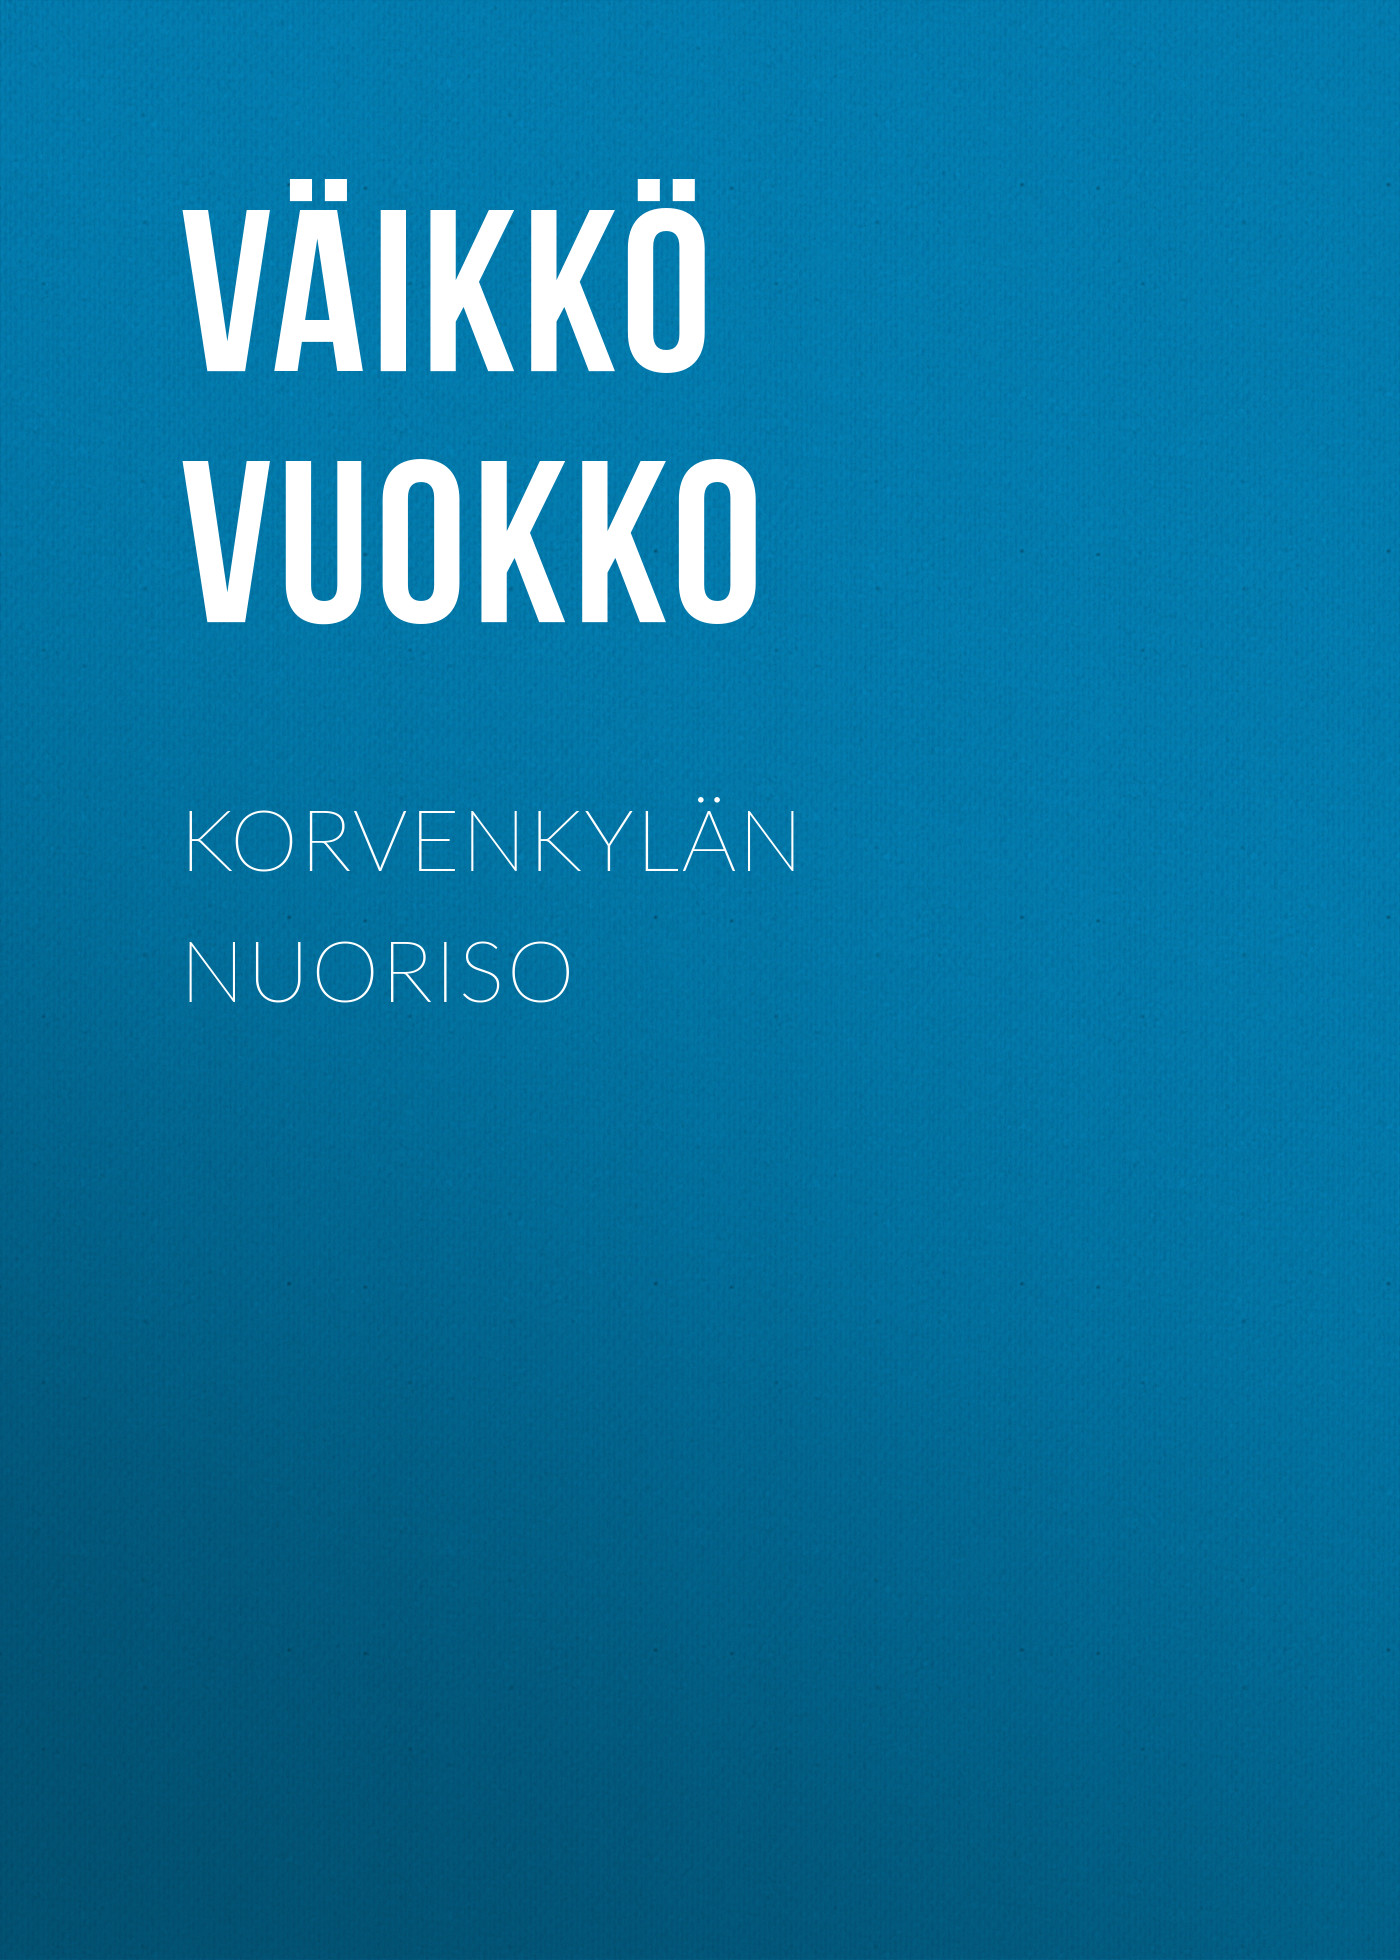 Книга Korvenkylän nuoriso из серии , созданная Väikkö Vuokko, может относится к жанру Зарубежная классика, Зарубежная старинная литература. Стоимость электронной книги Korvenkylän nuoriso с идентификатором 34283216 составляет 0 руб.